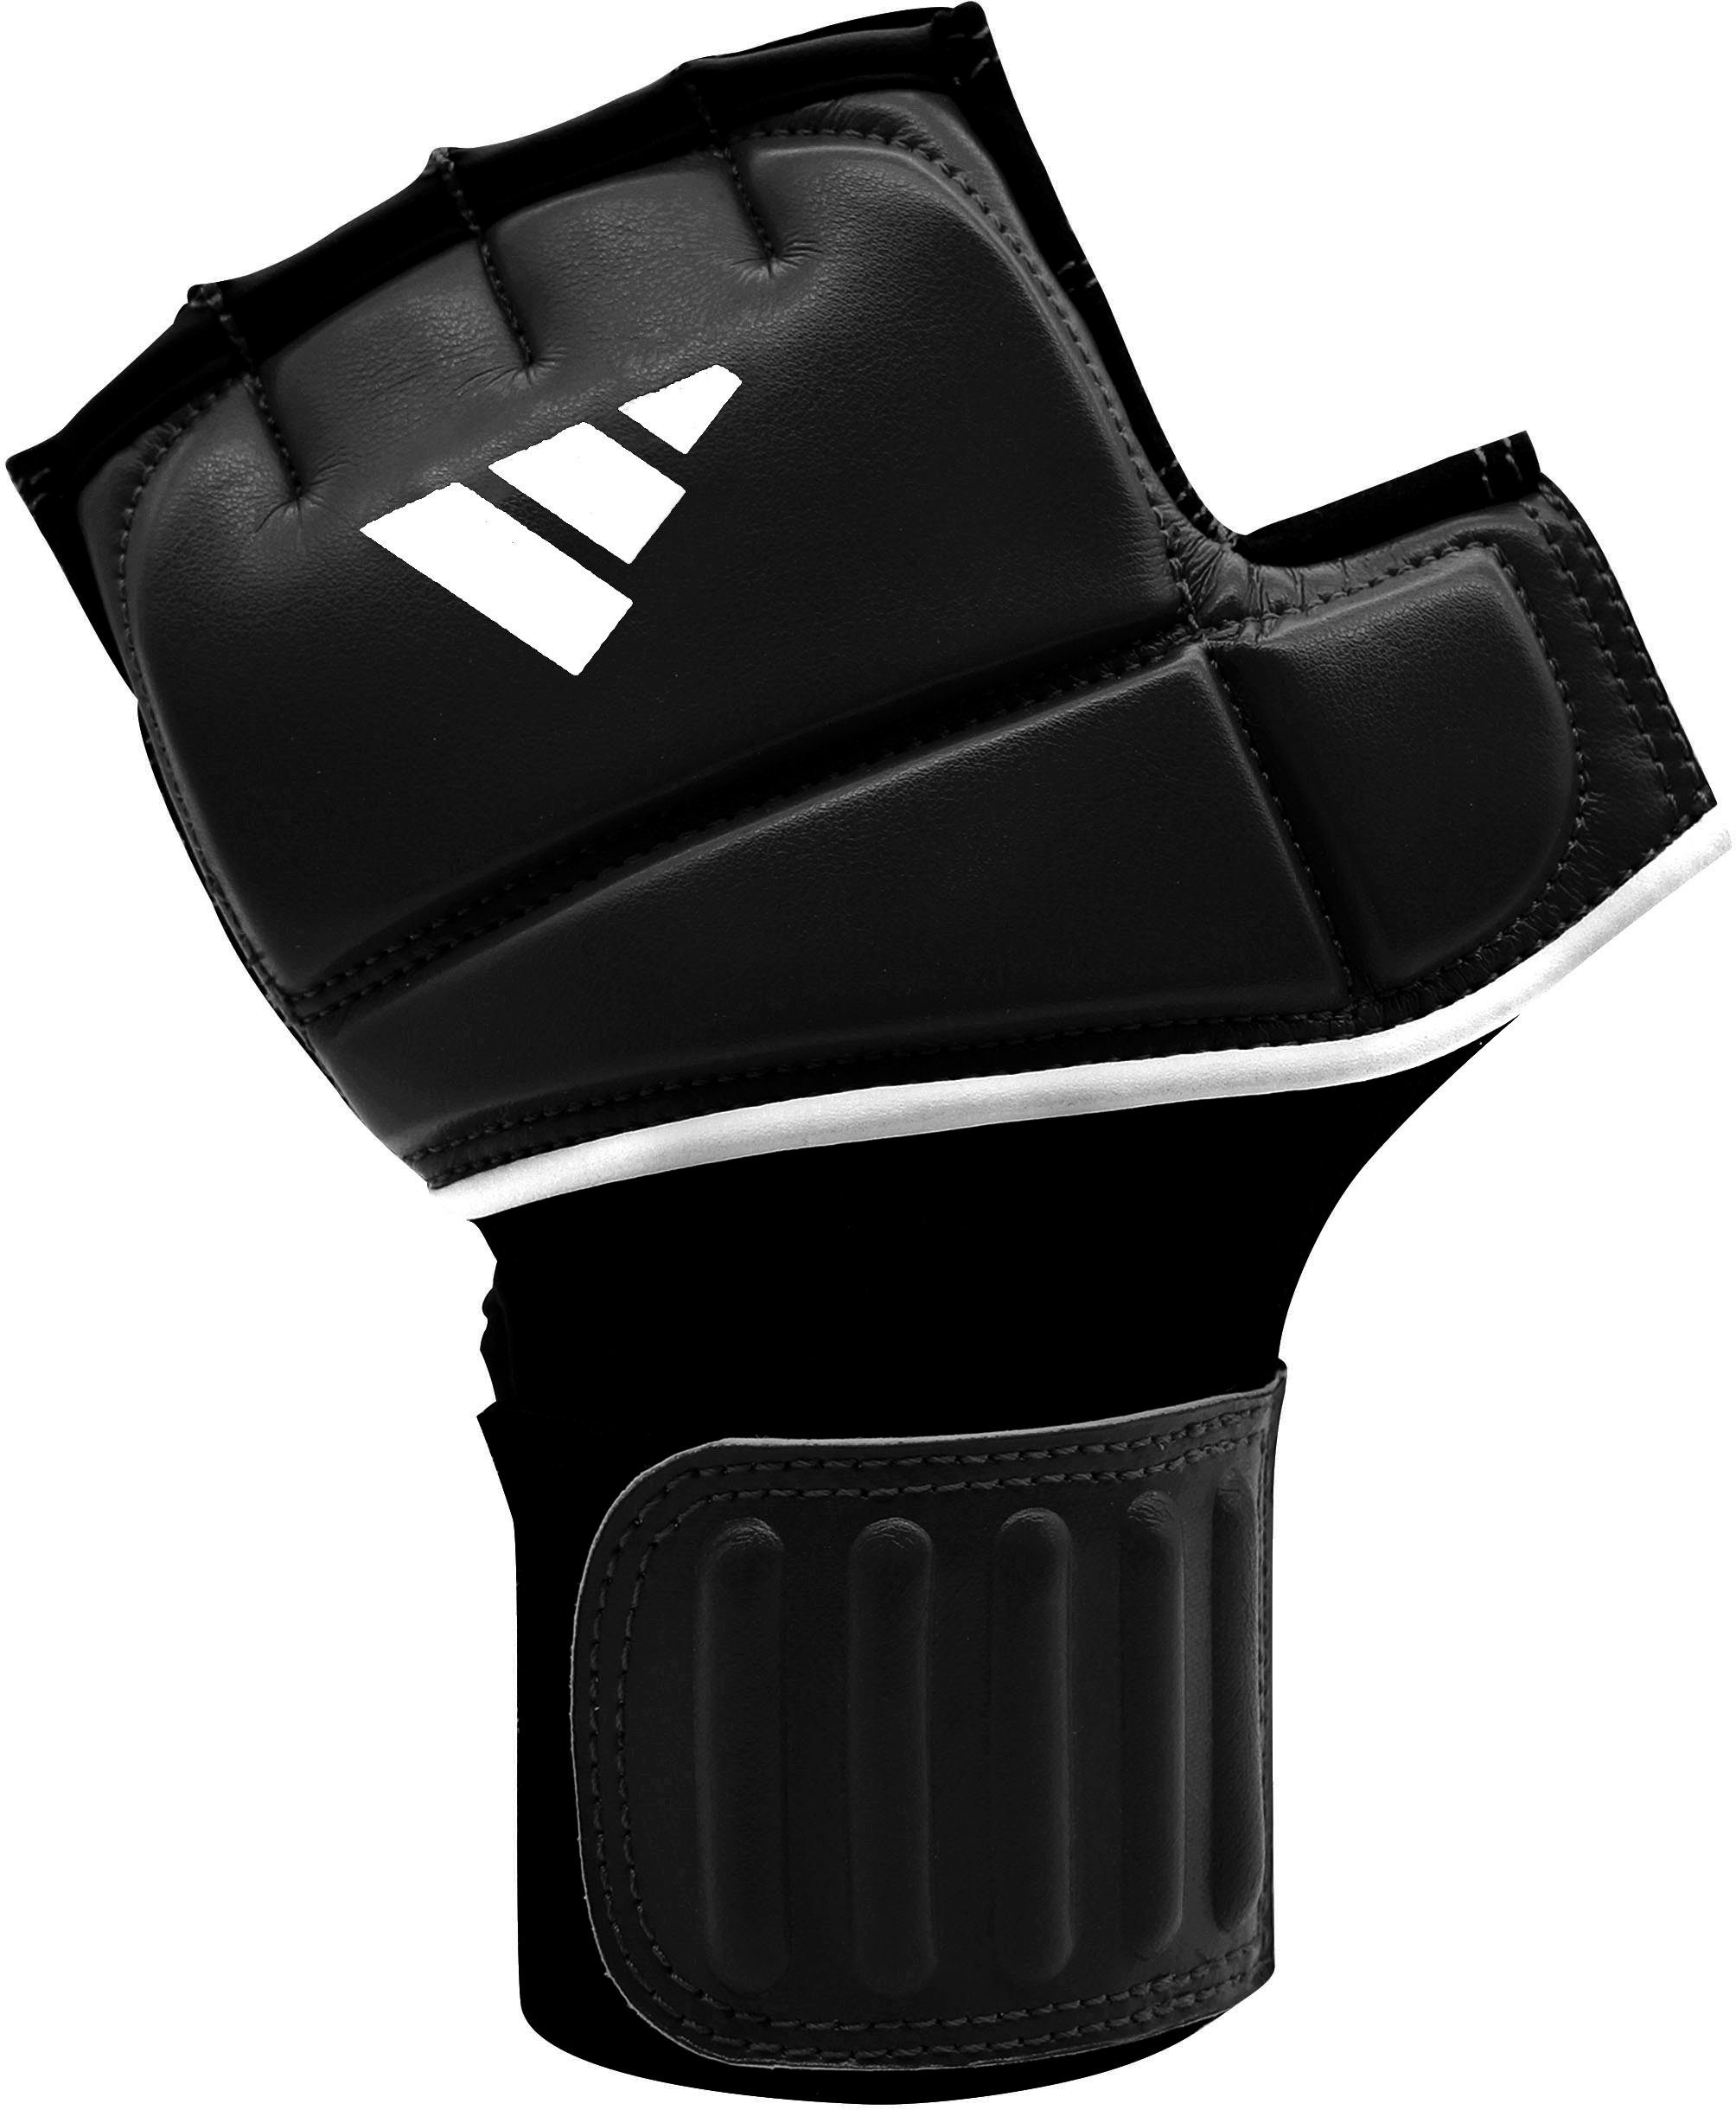 Gel Glove Speed Punch-Handschuhe adidas Performance